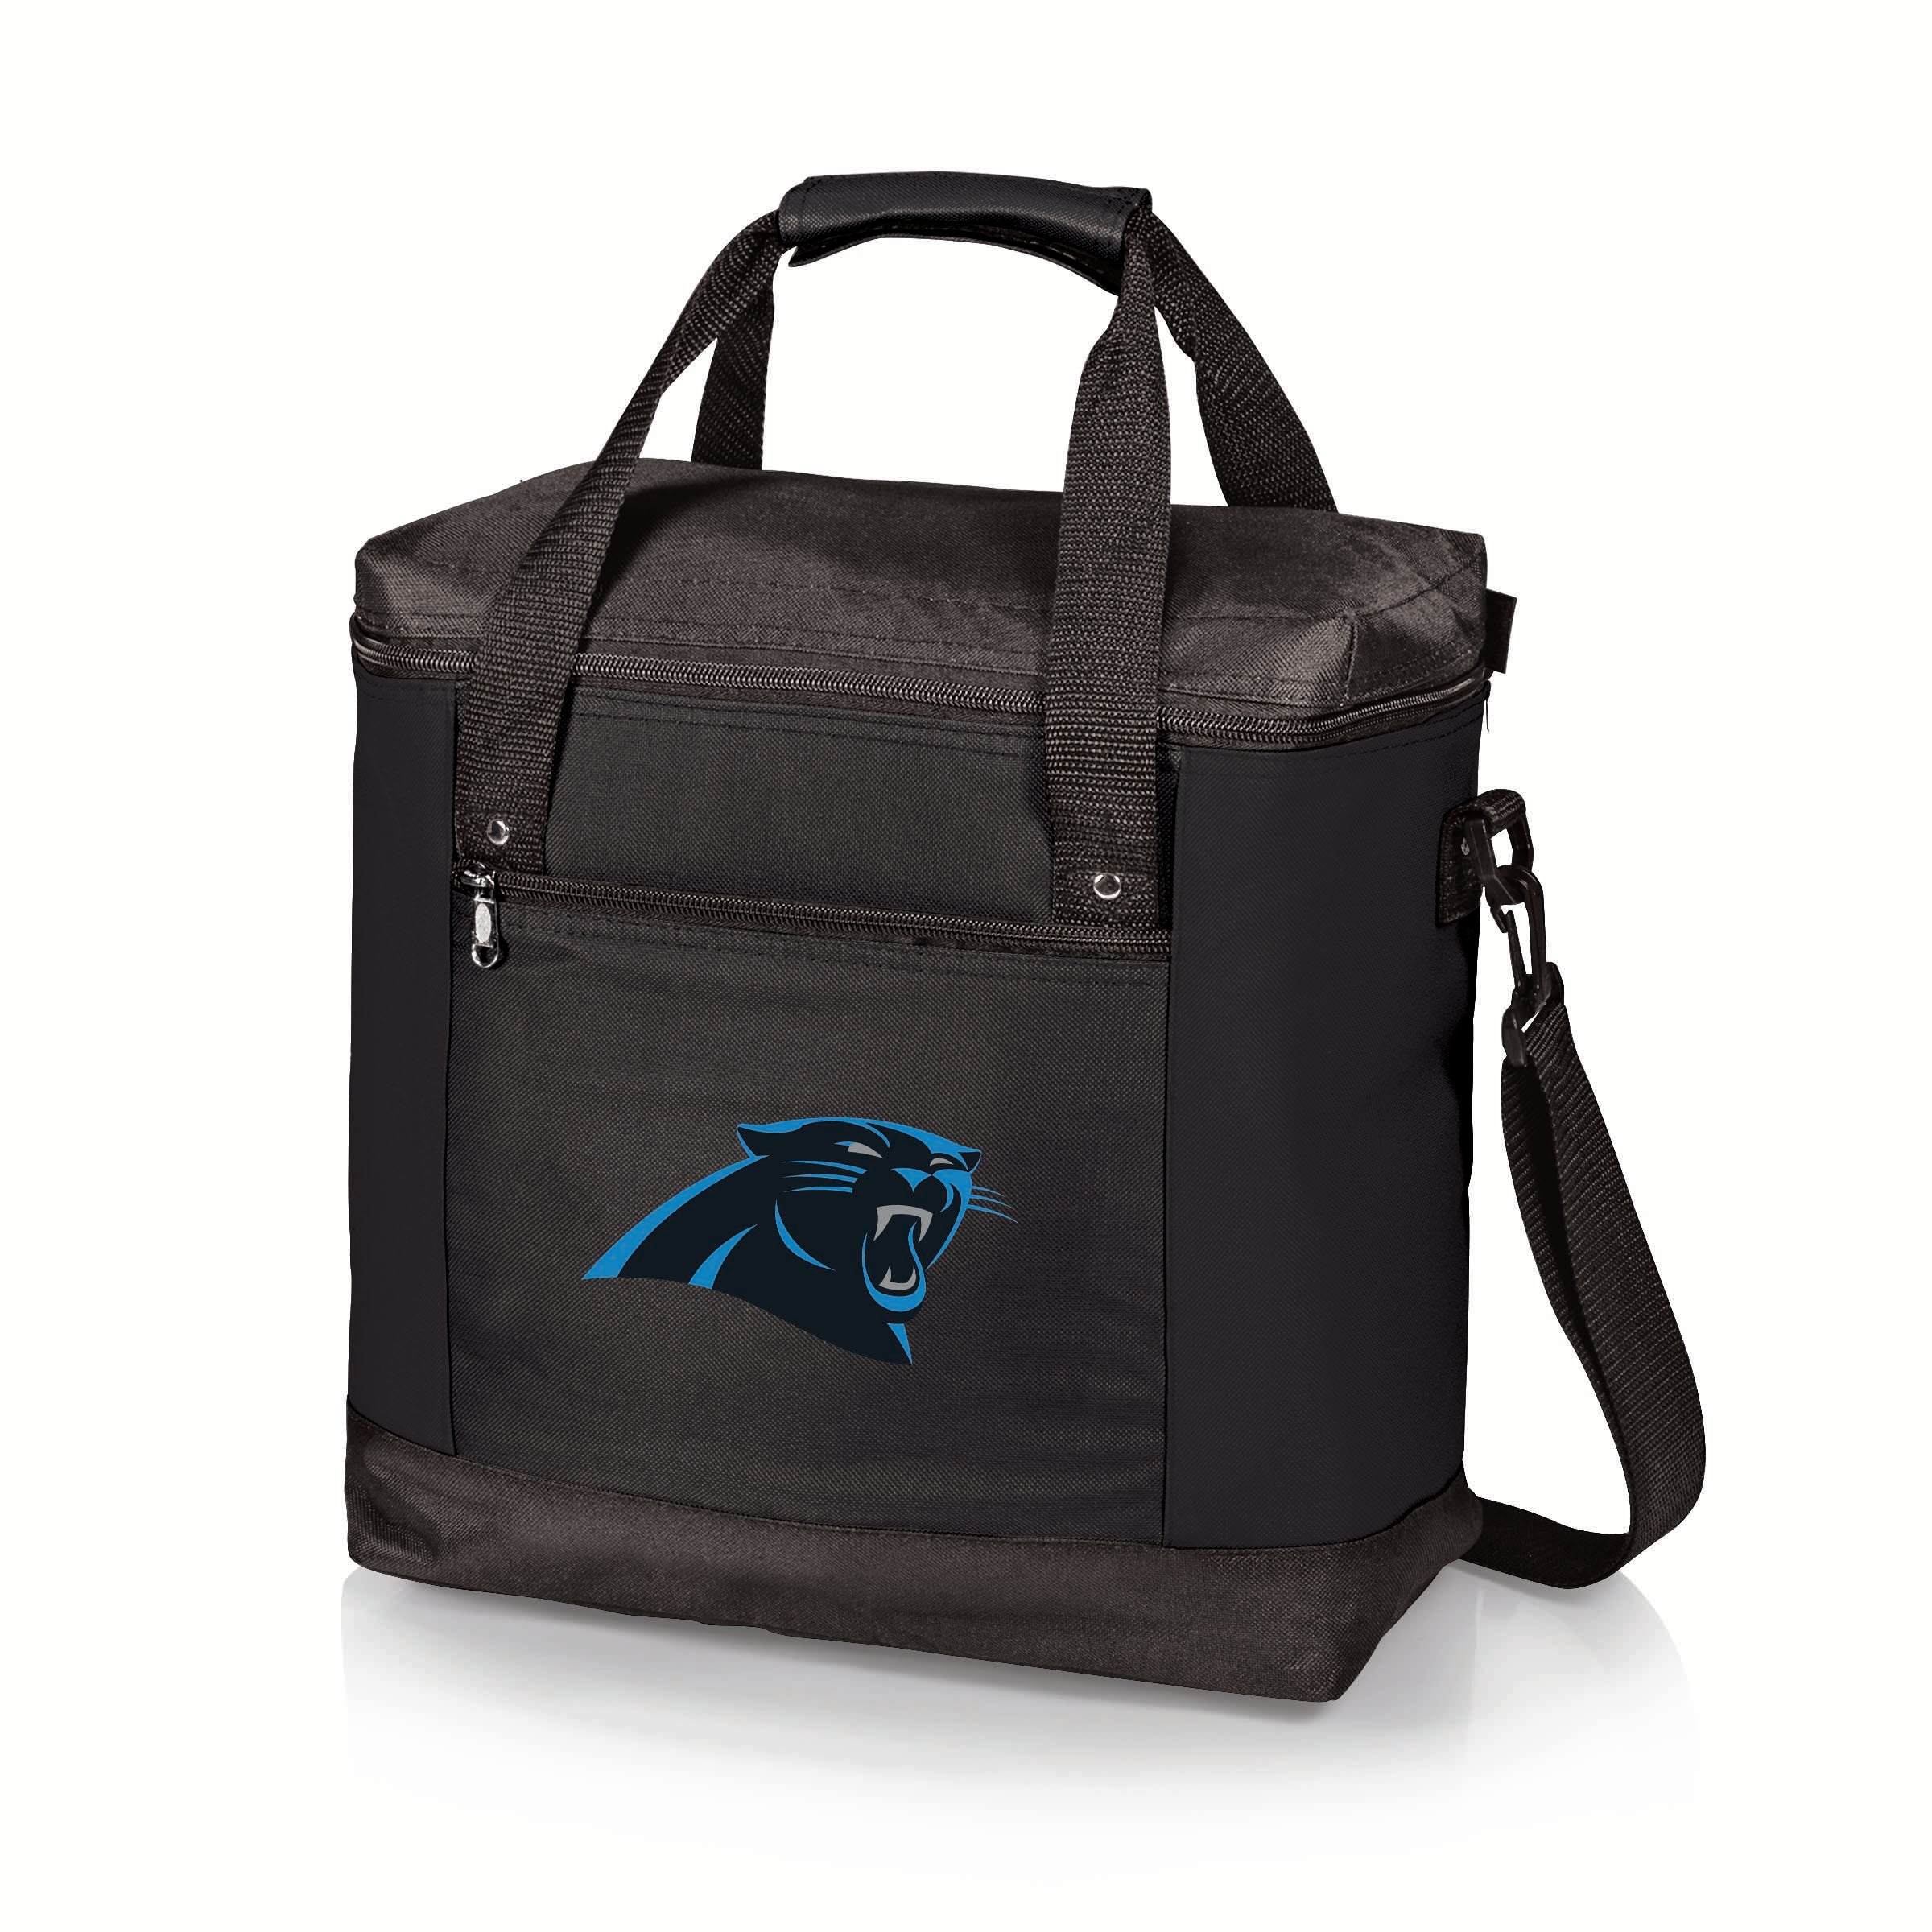 Carolina Panthers - Montero Cooler Tote Bag